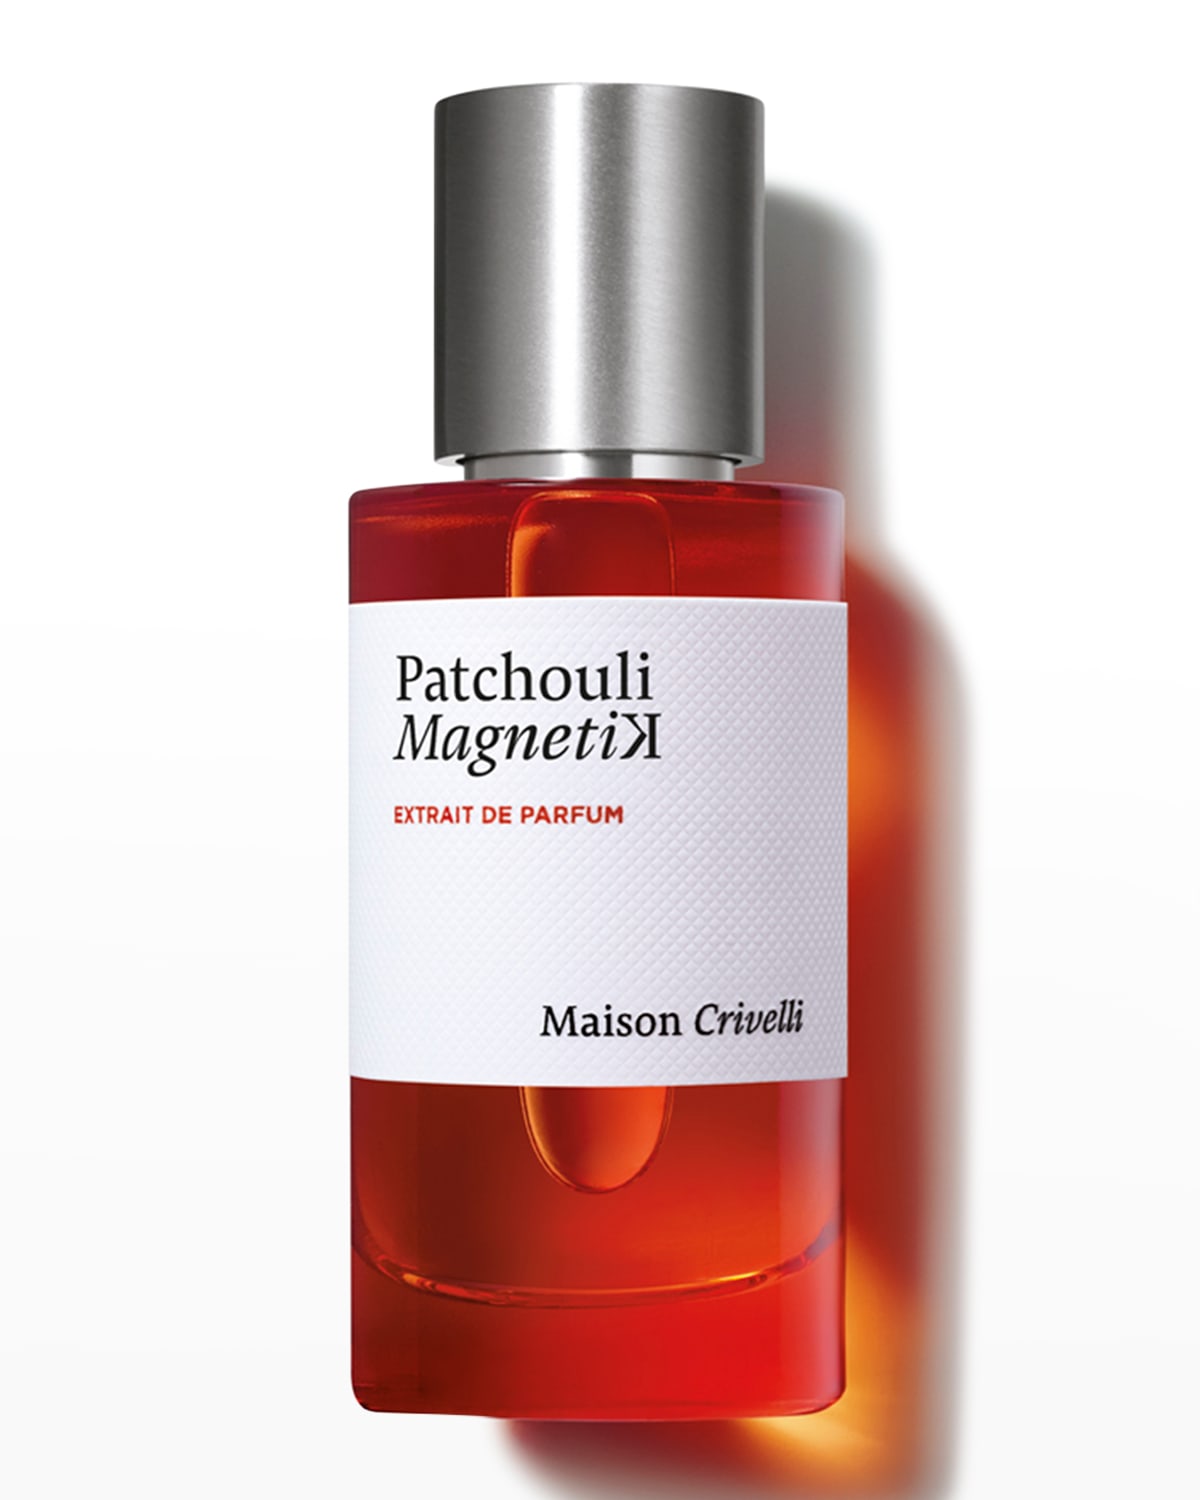 Patchouli Magnetik Extrait de Parfum, 1.7 oz.